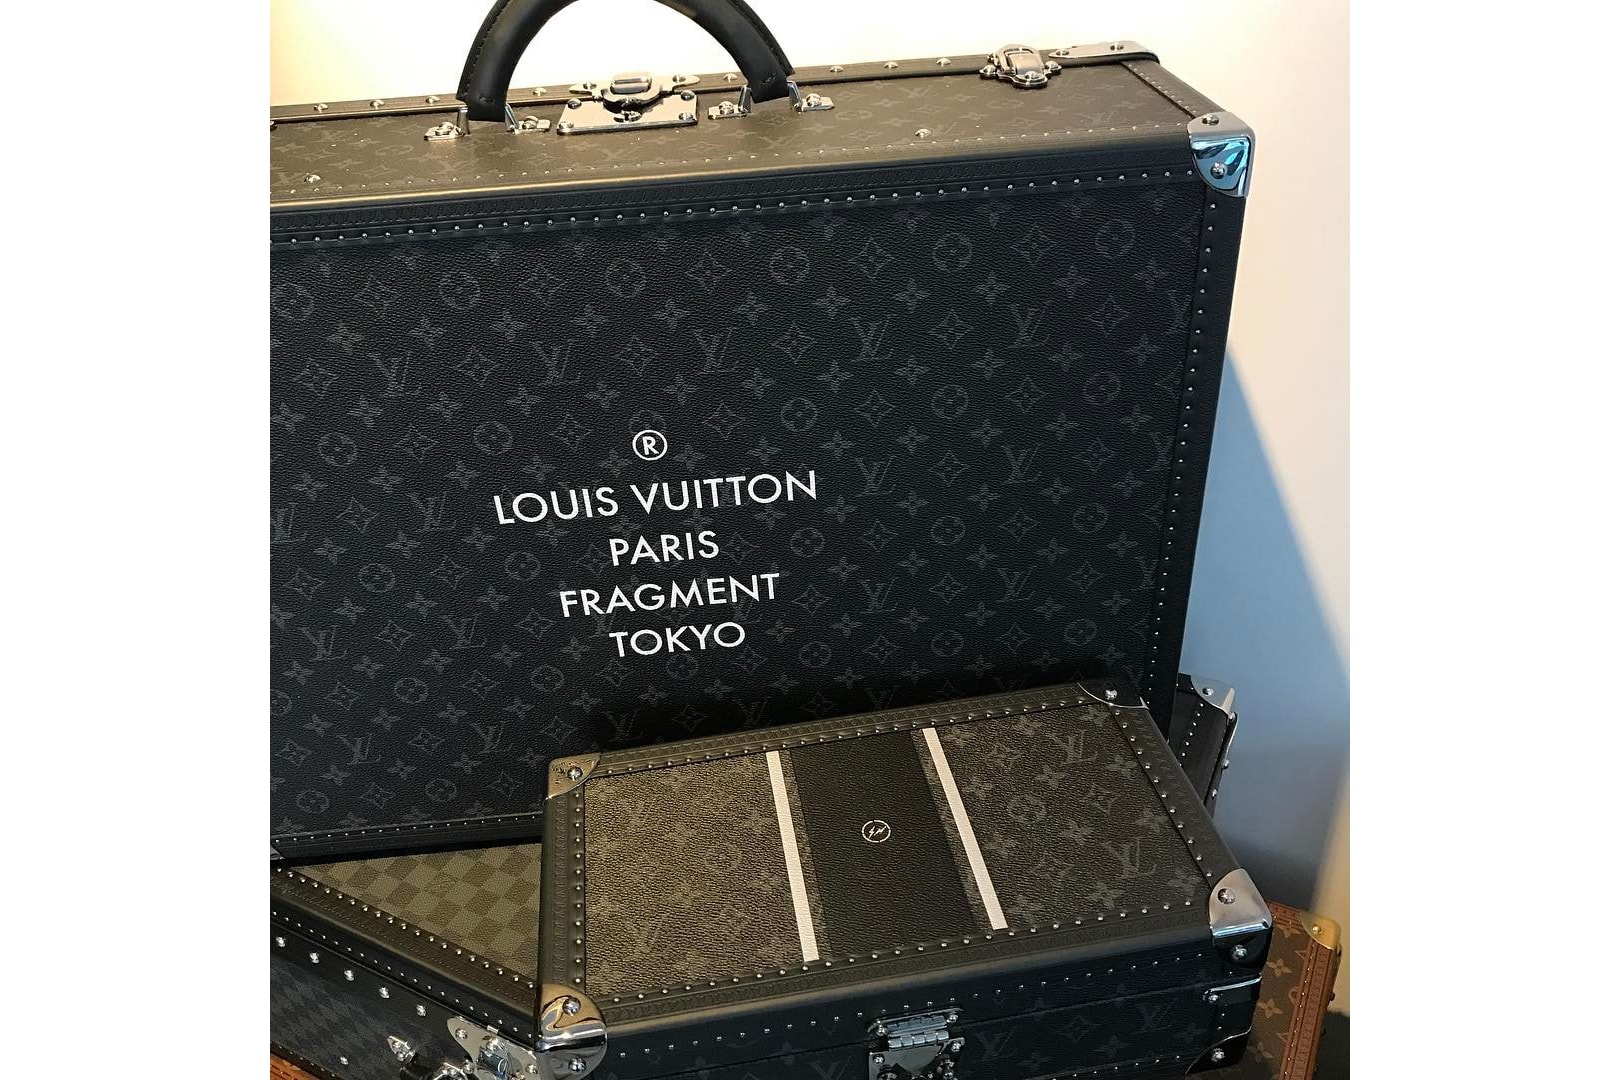 fragment design x Louis Vuitton Trunk First Look